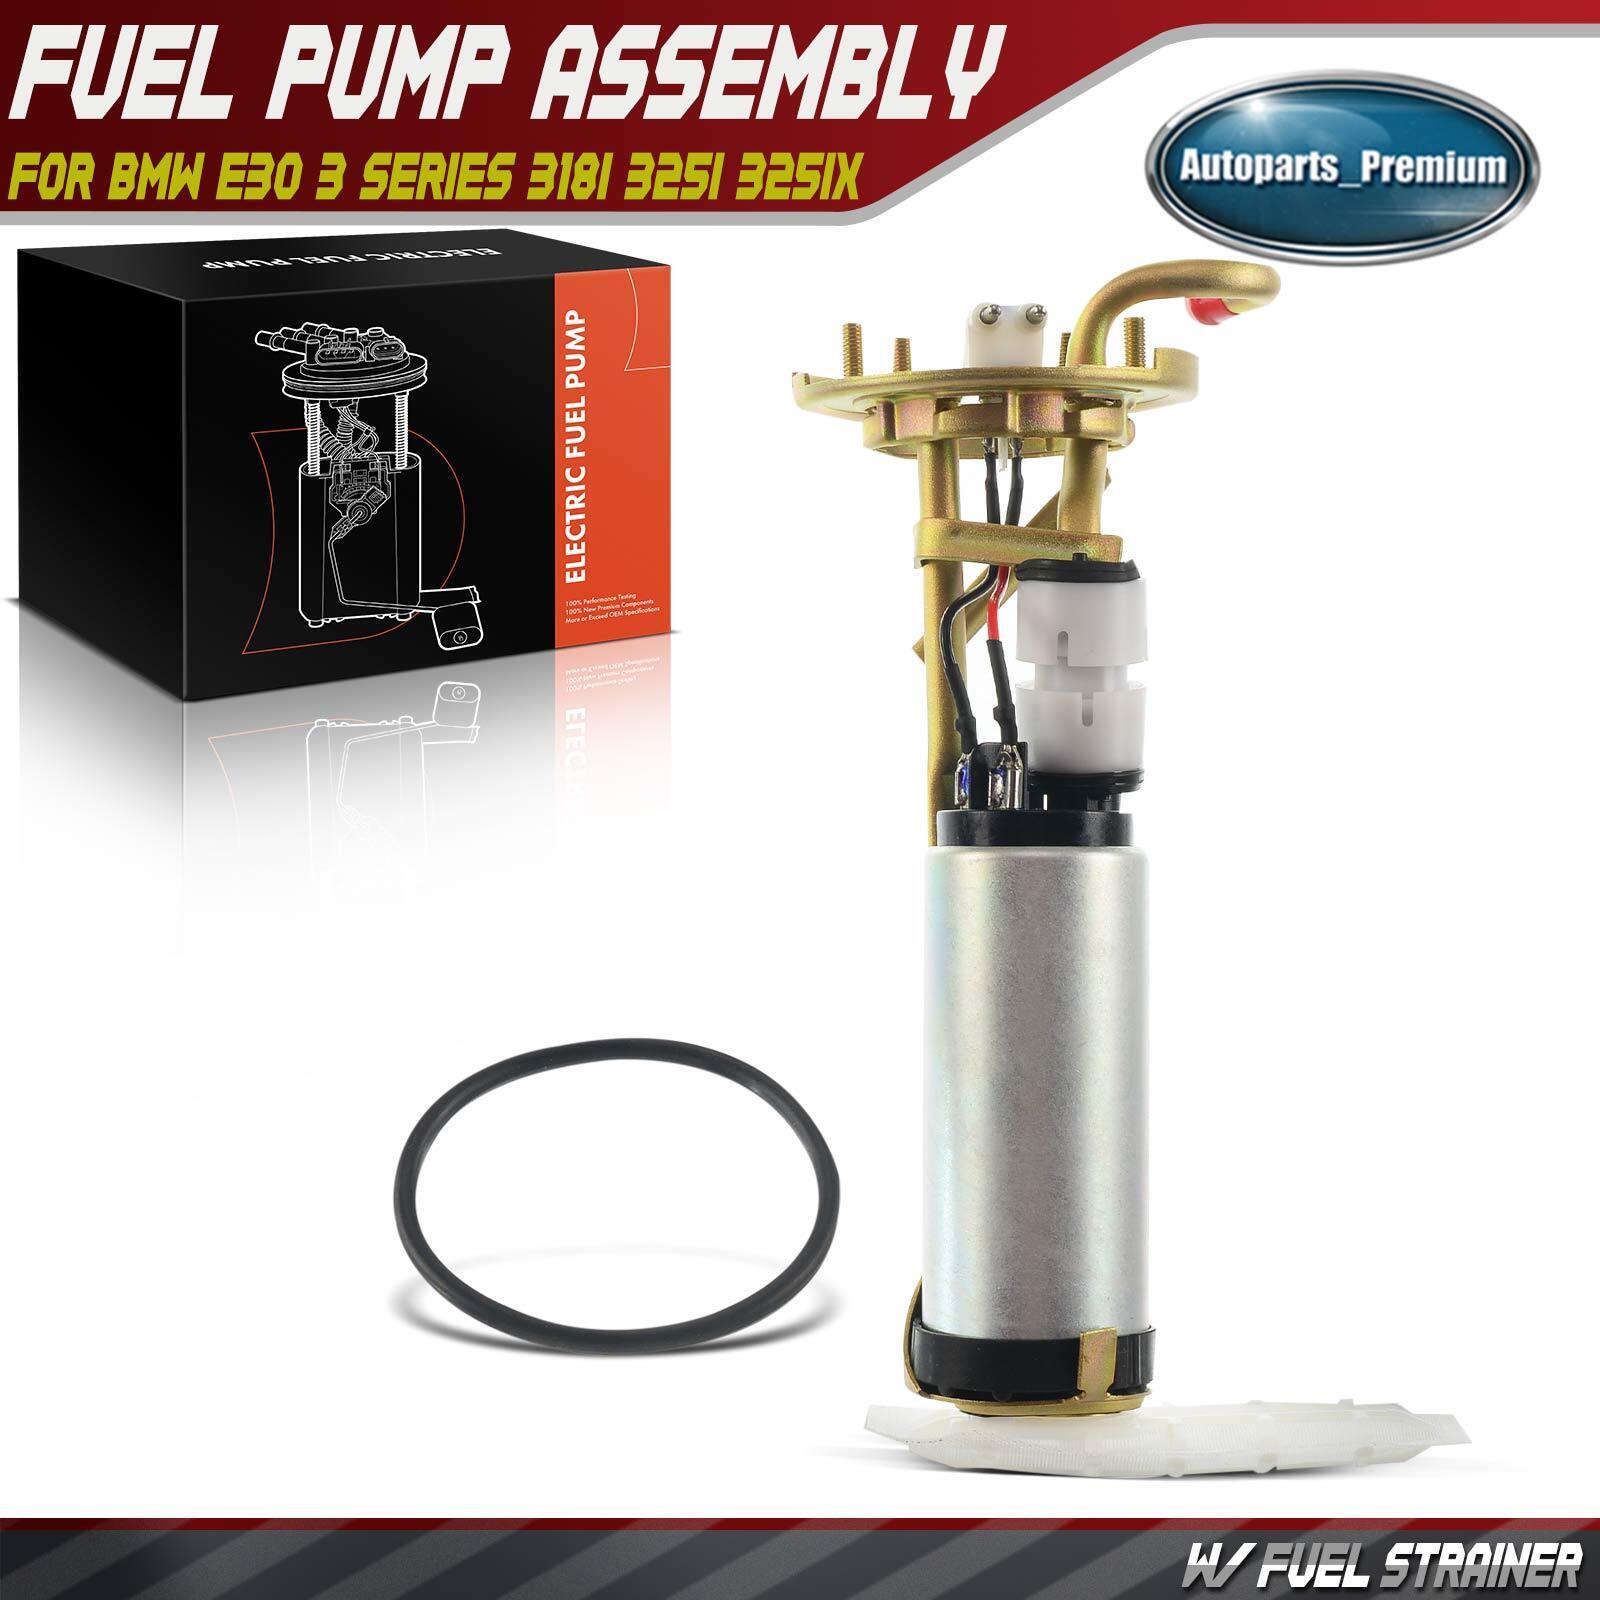 Electrical Fuel Pump Assembly for BMW E30 3 Series 318i 325i 325ix 16141179992